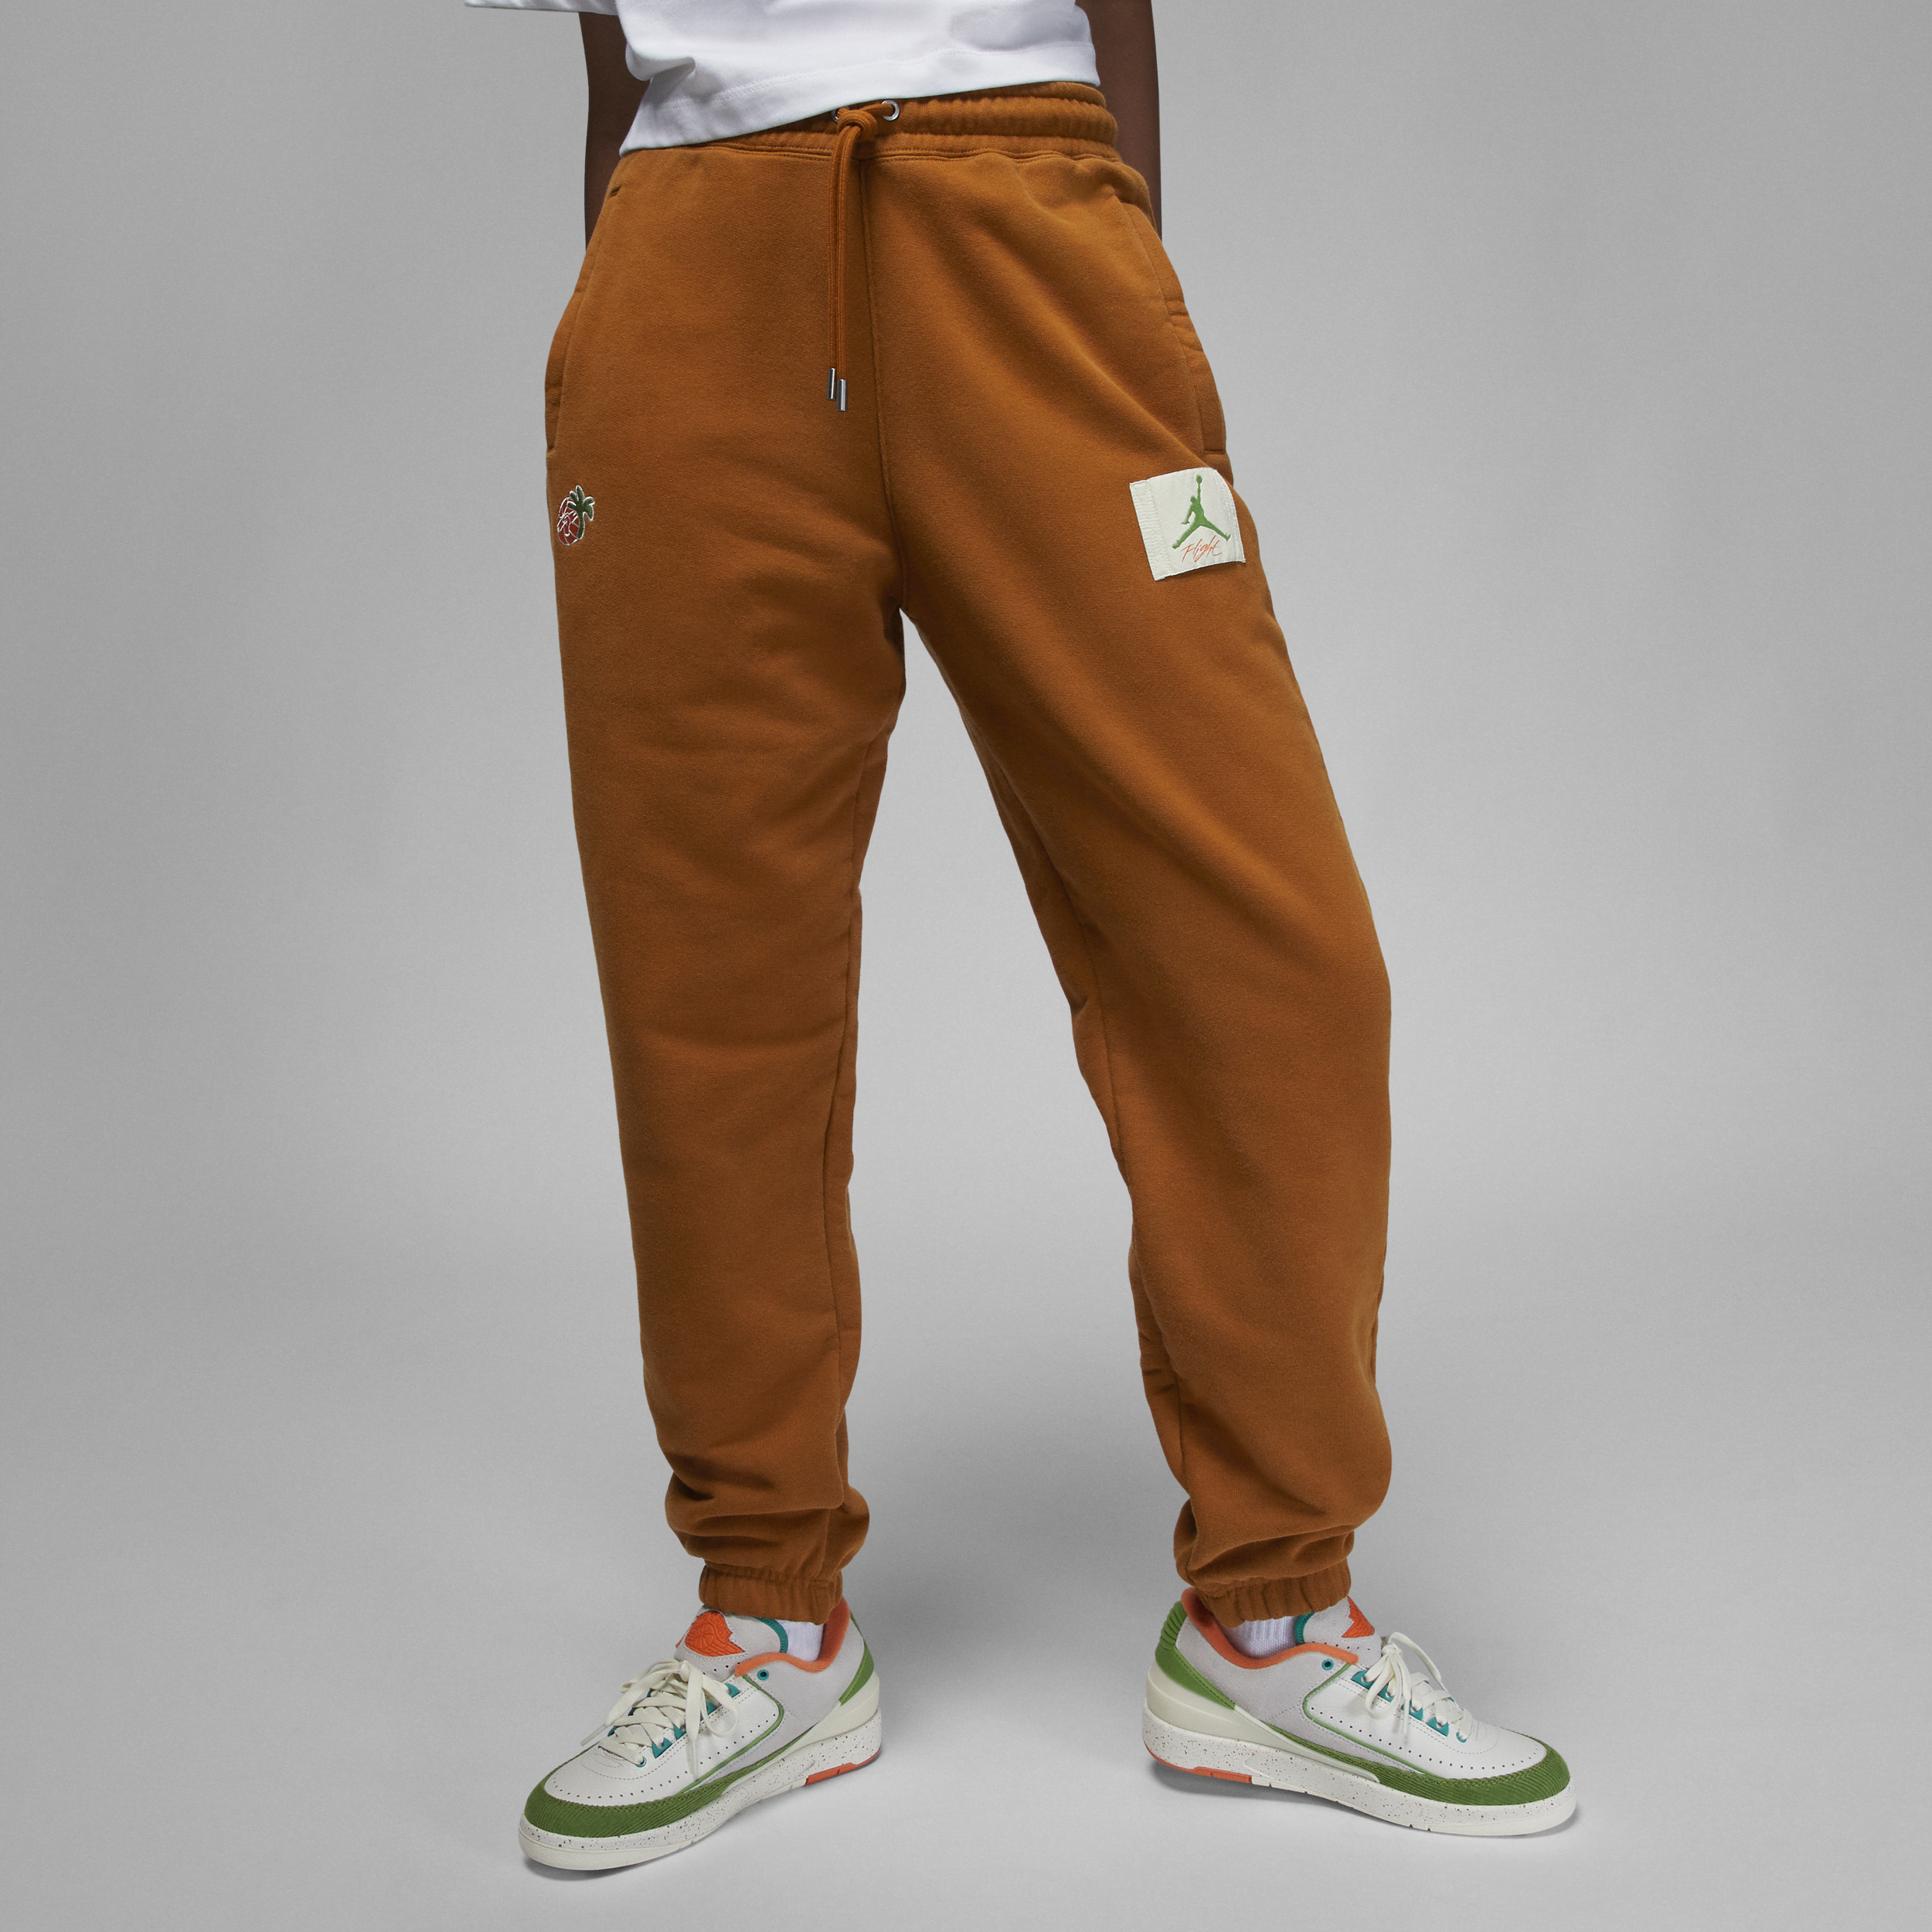 Air Jordan x Titan-bukser til kvinder - brun